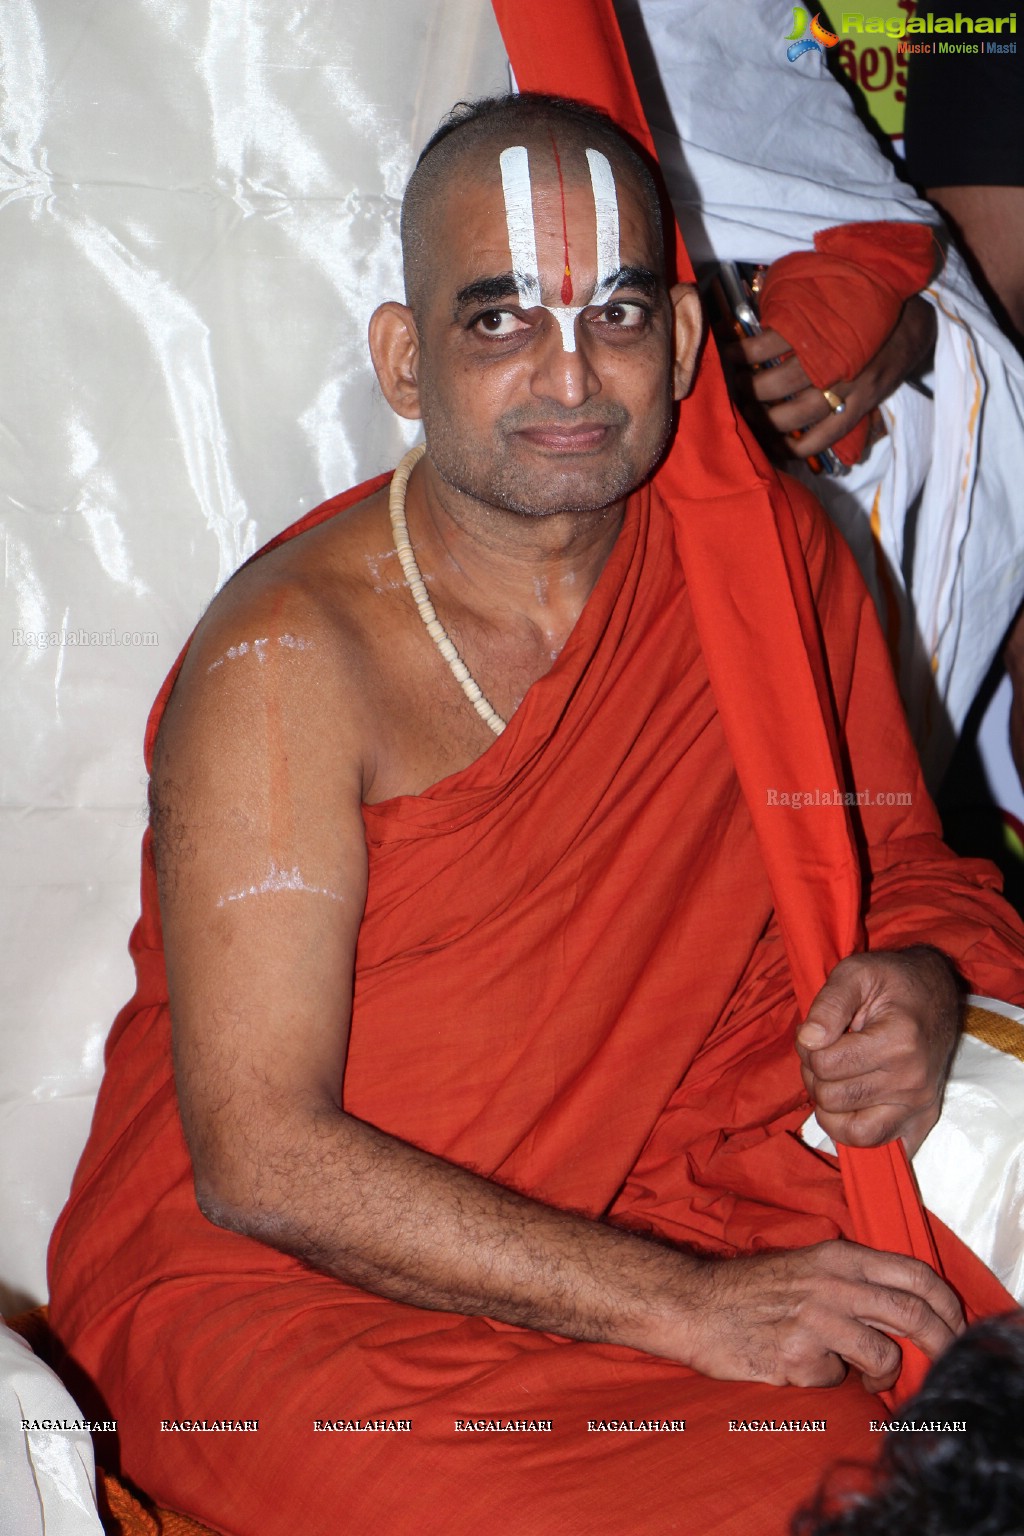 Sri Sri Sri Tridandi Srimannarayana Ramanuja Chinna Jeeyar Swamiji inaugurates Kancheepuram Varamahalakshmi Silks, Hyderabad